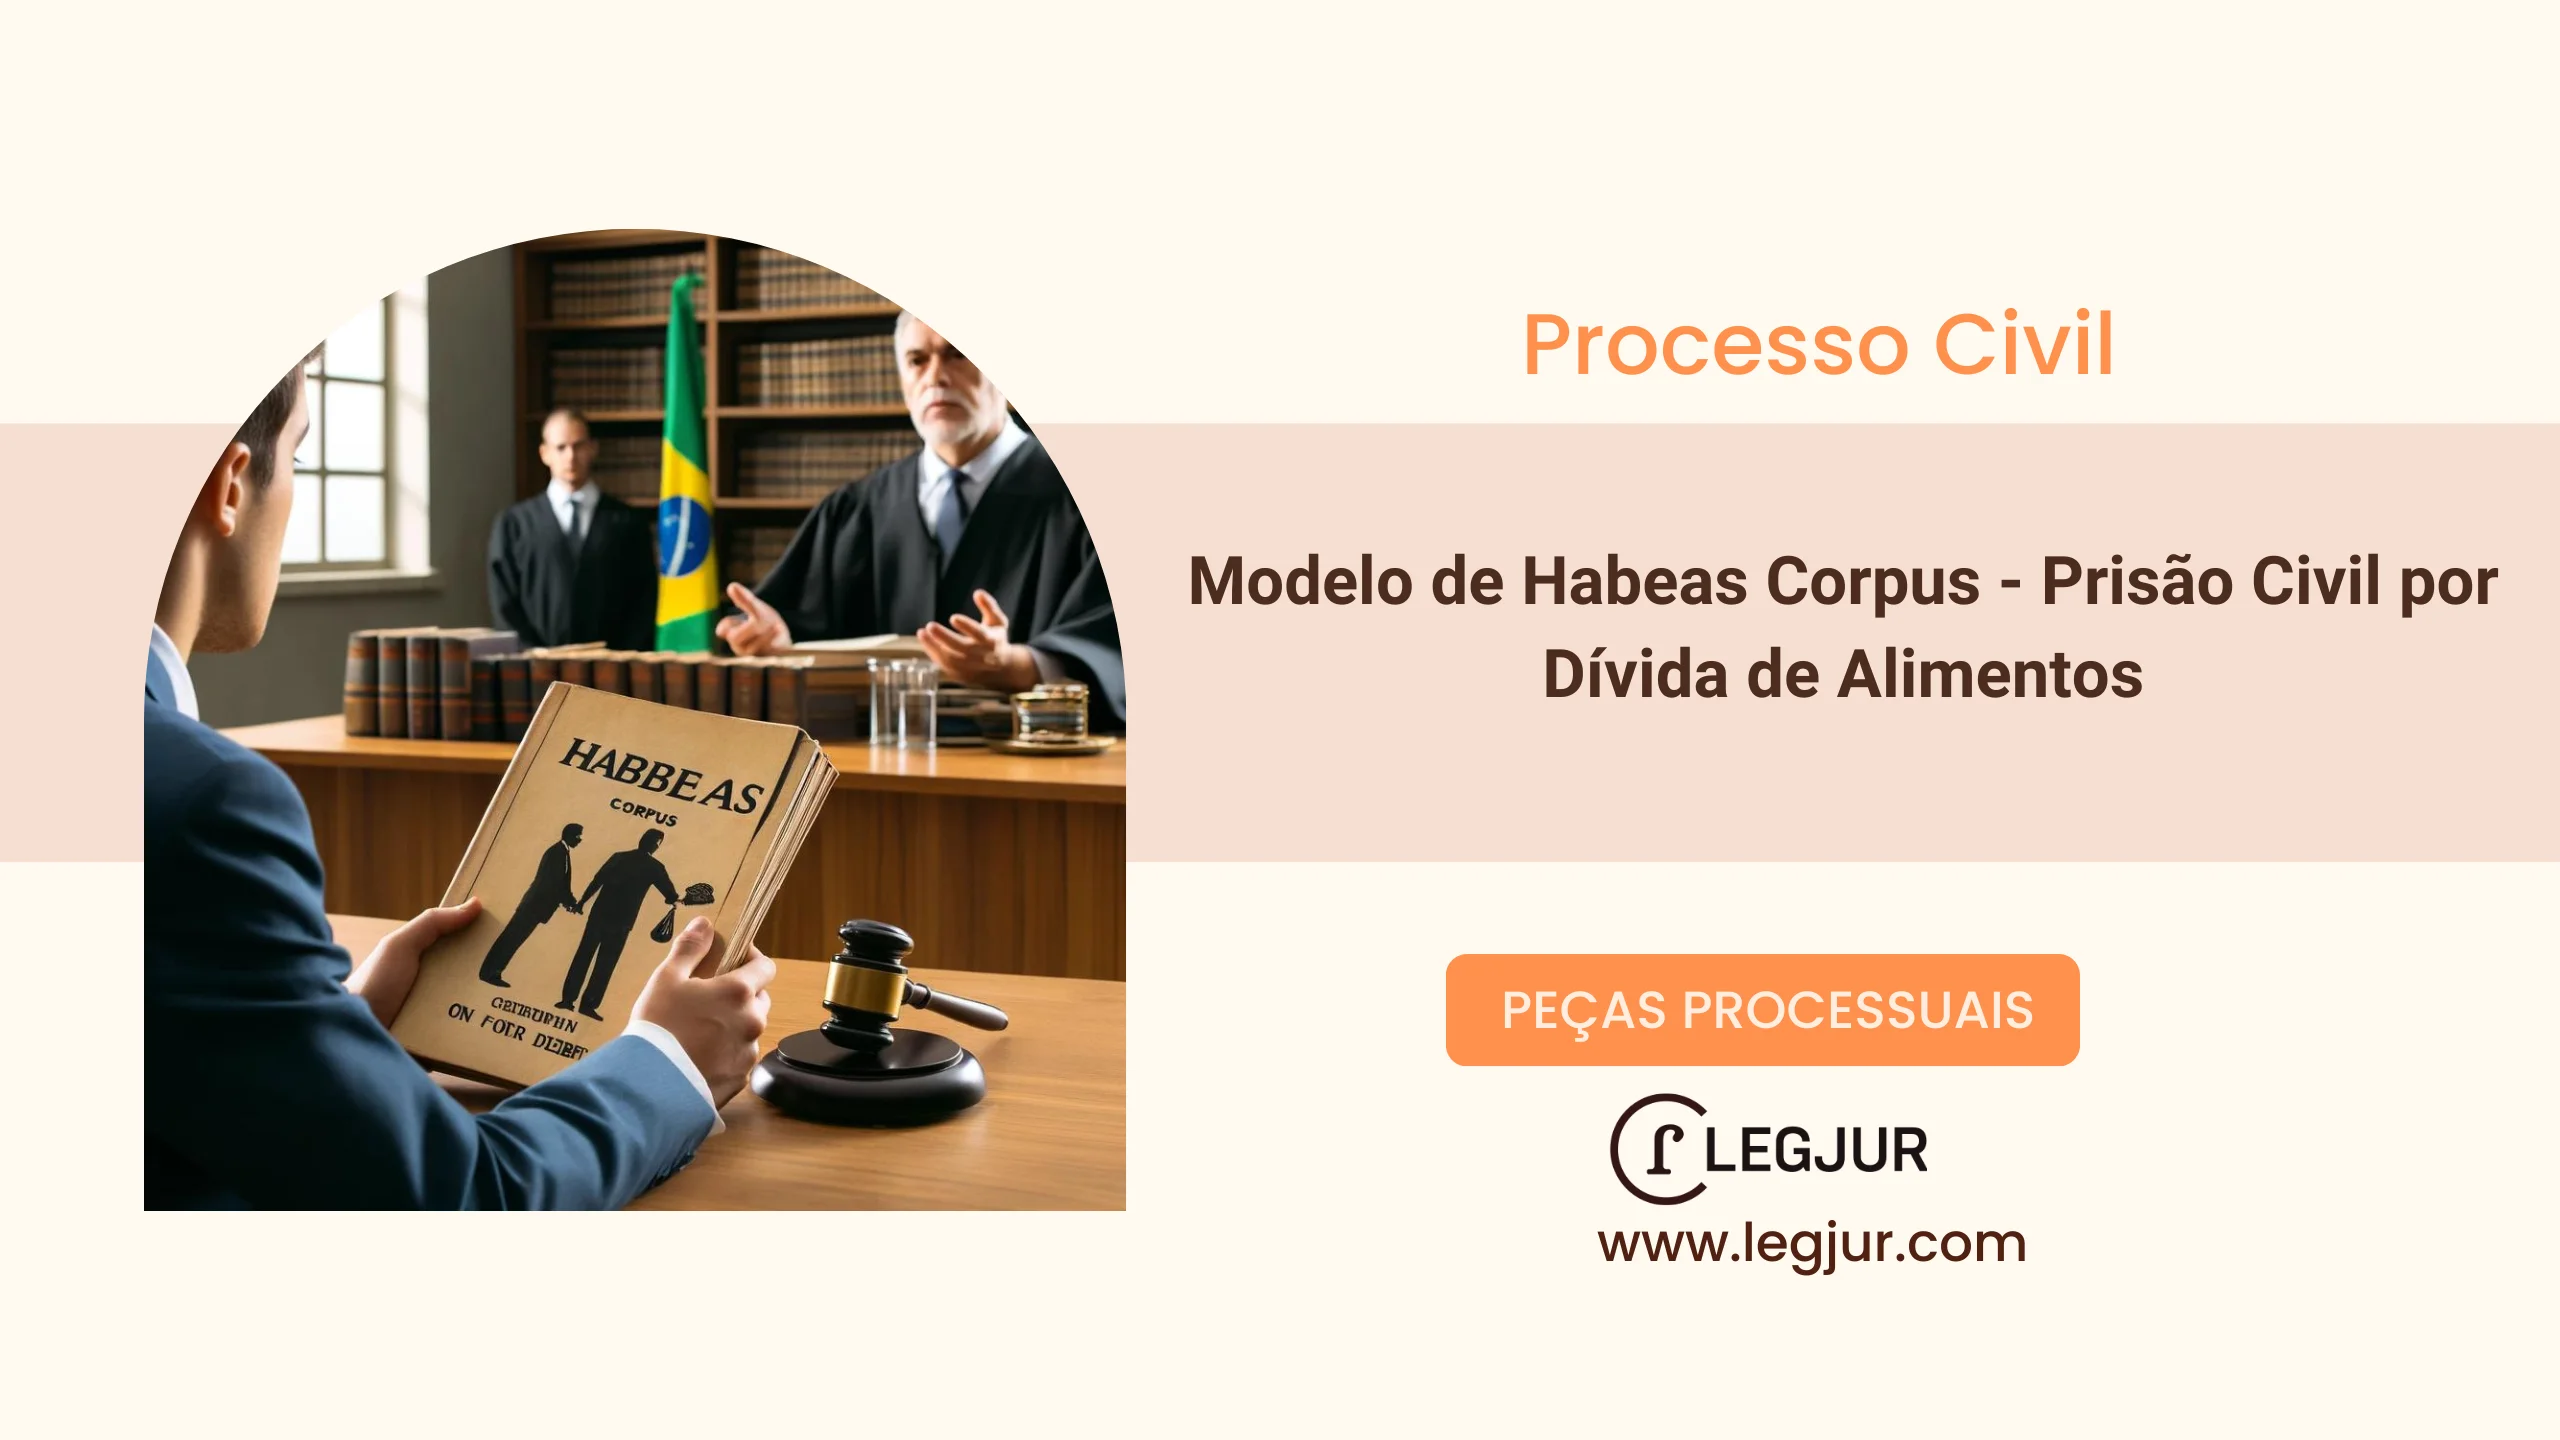 Modelo de Habeas Corpus - Prisão Civil por Dívida de Alimentos